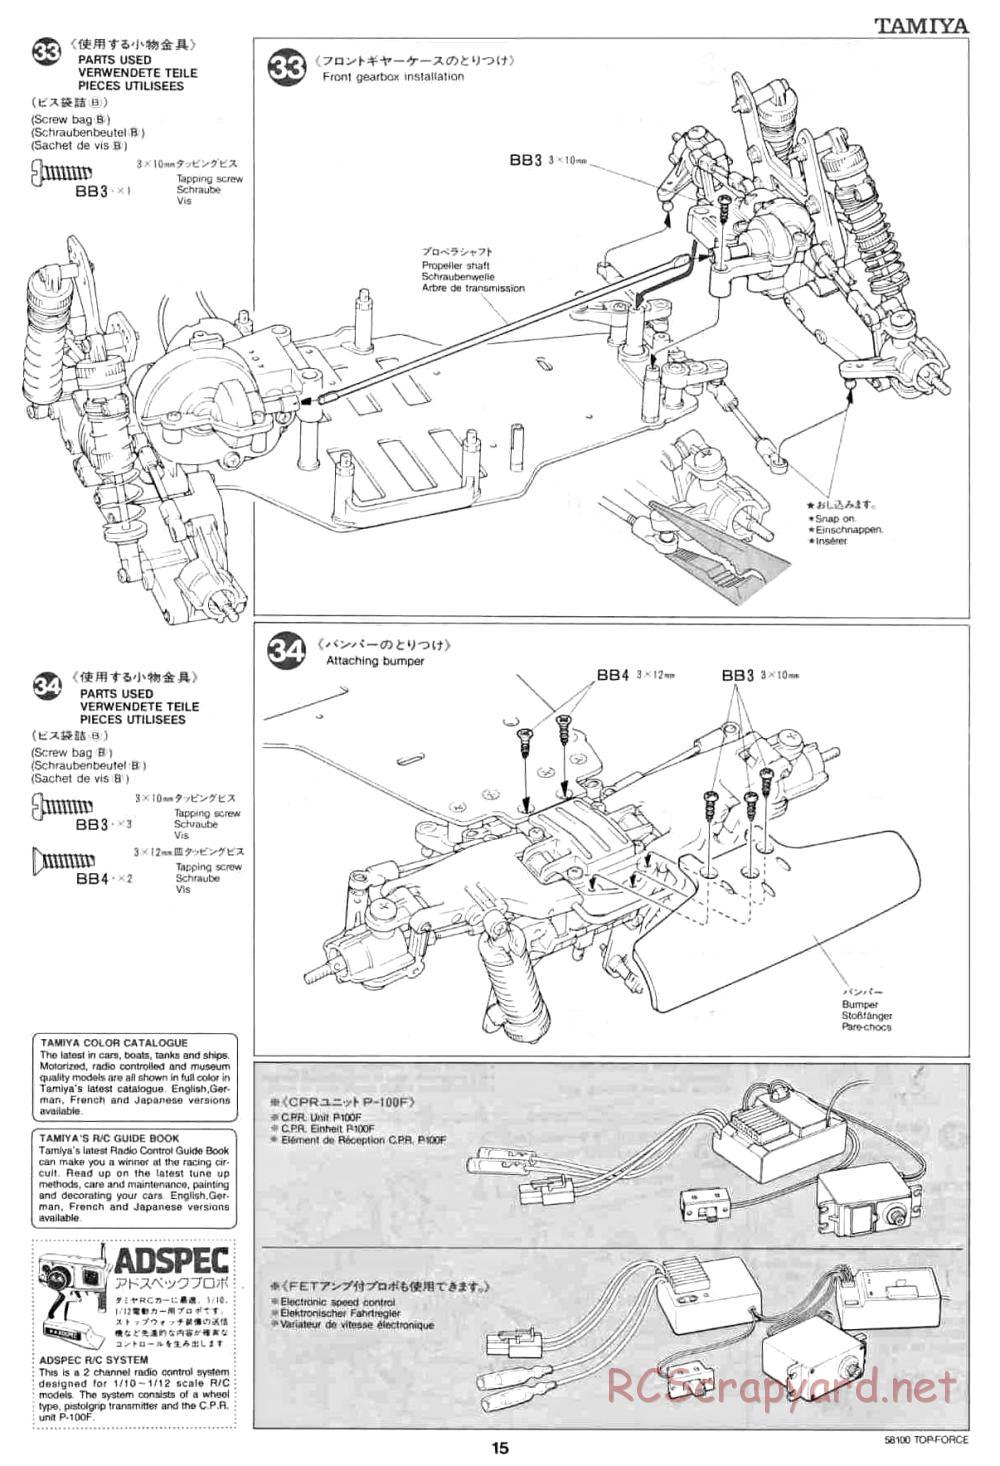 Tamiya - Top Force - 58100 - Manual - Page 15